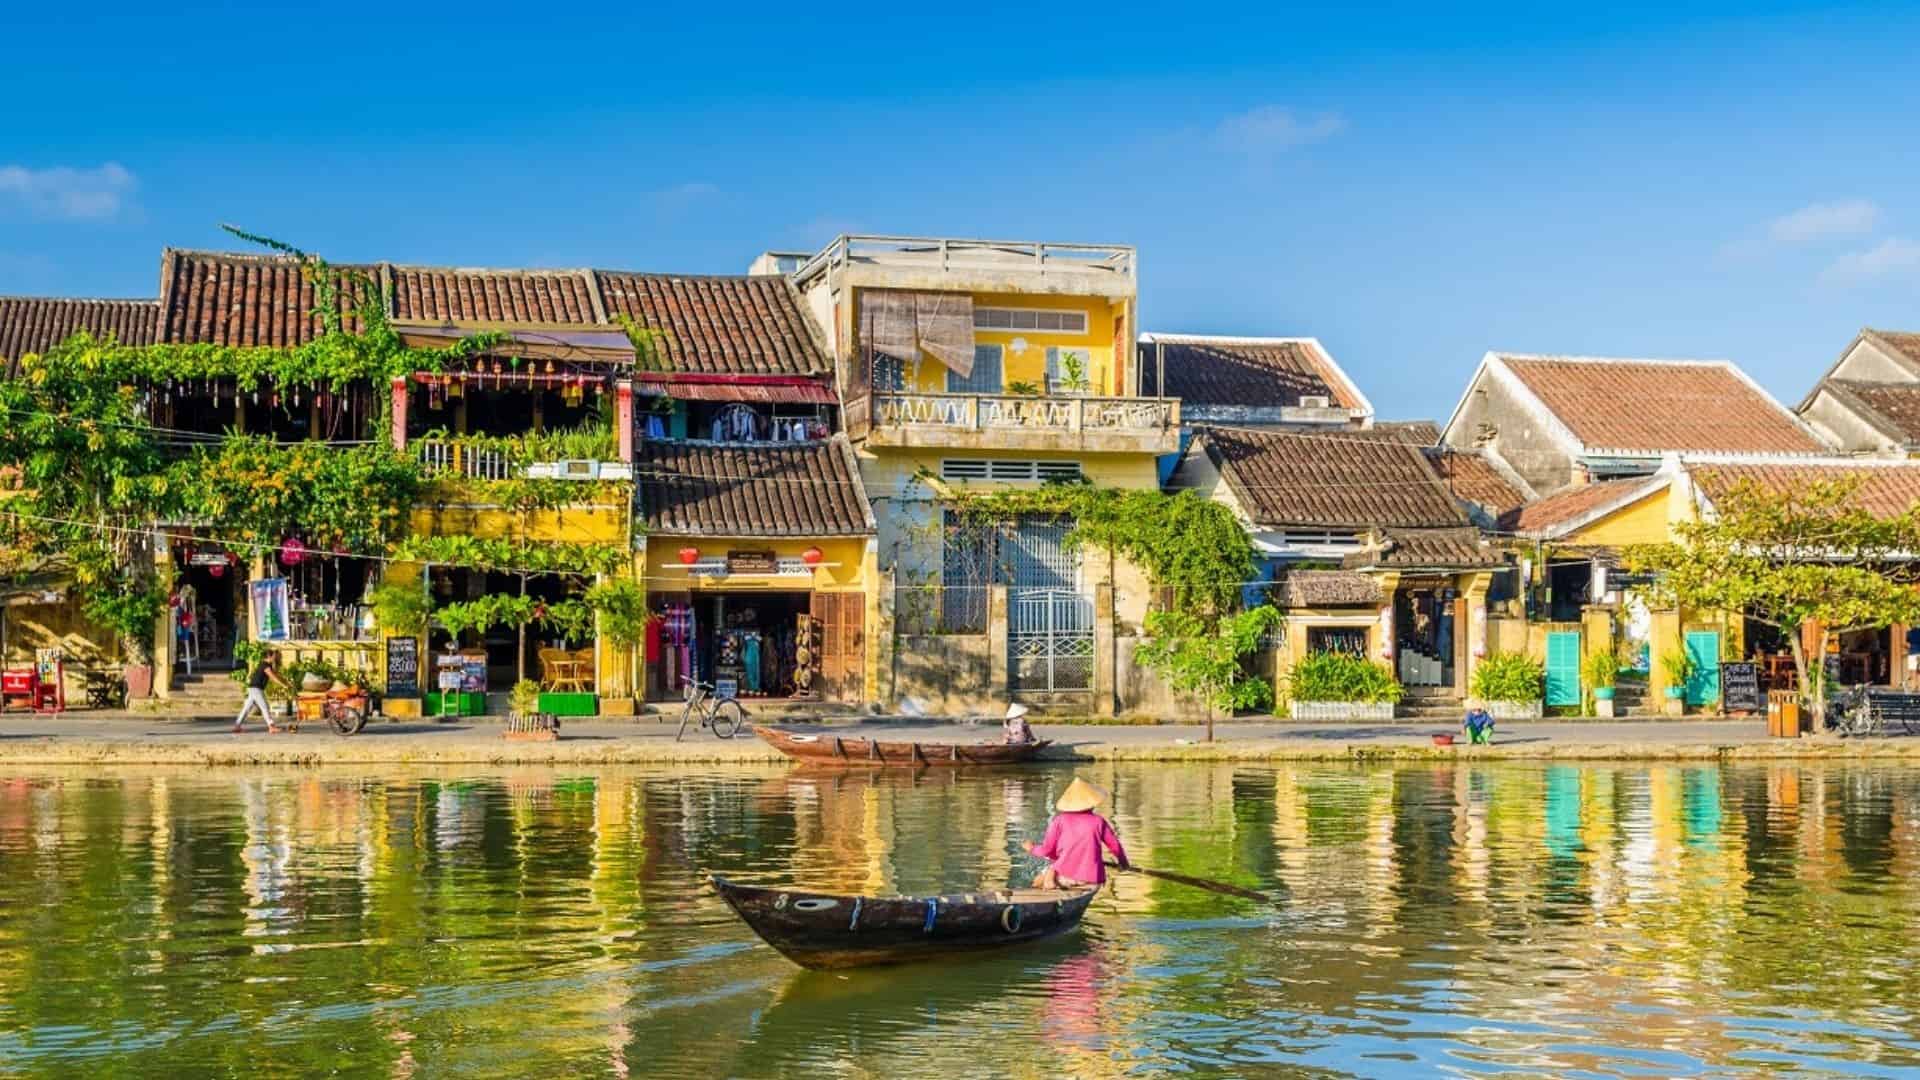 Thu Bon River, Hoi An - a Historical and Cultural Treasure